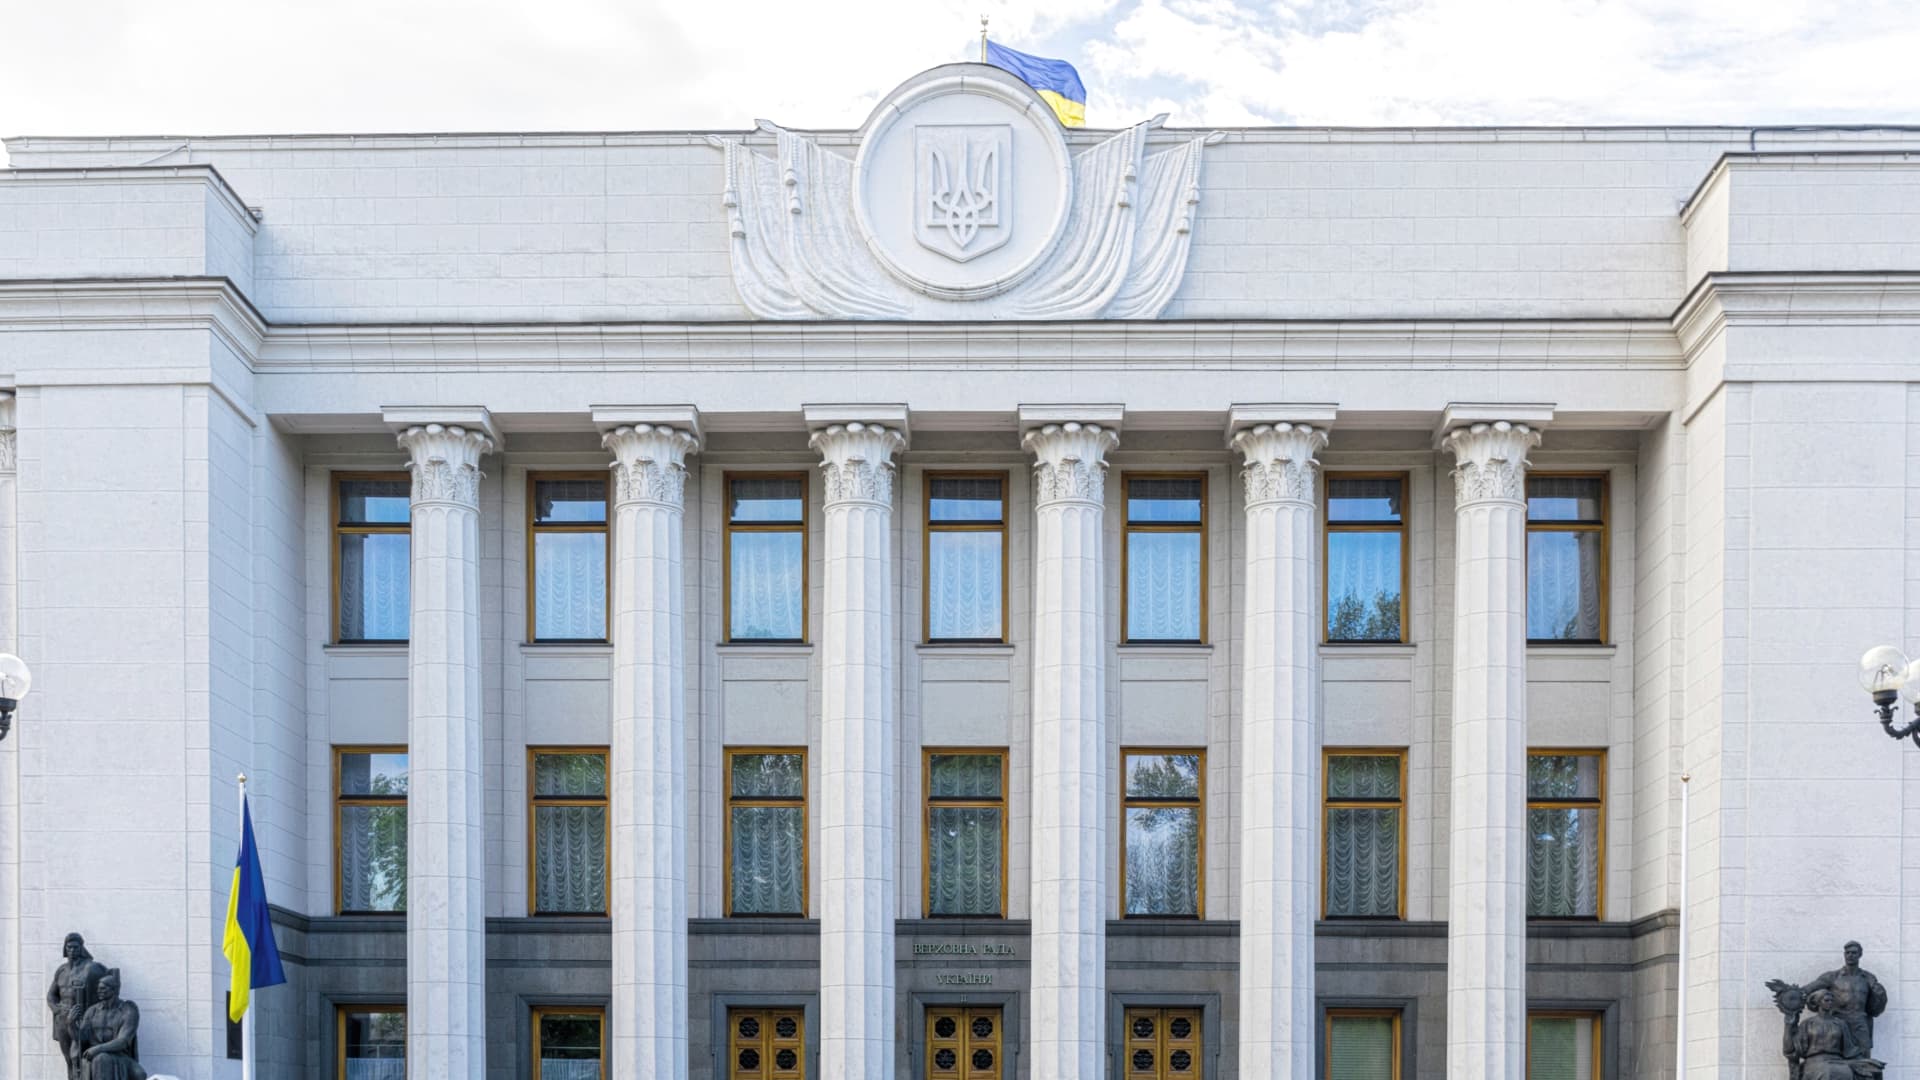 The building of the Verkhovna Rada, the parliament of Ukraine.